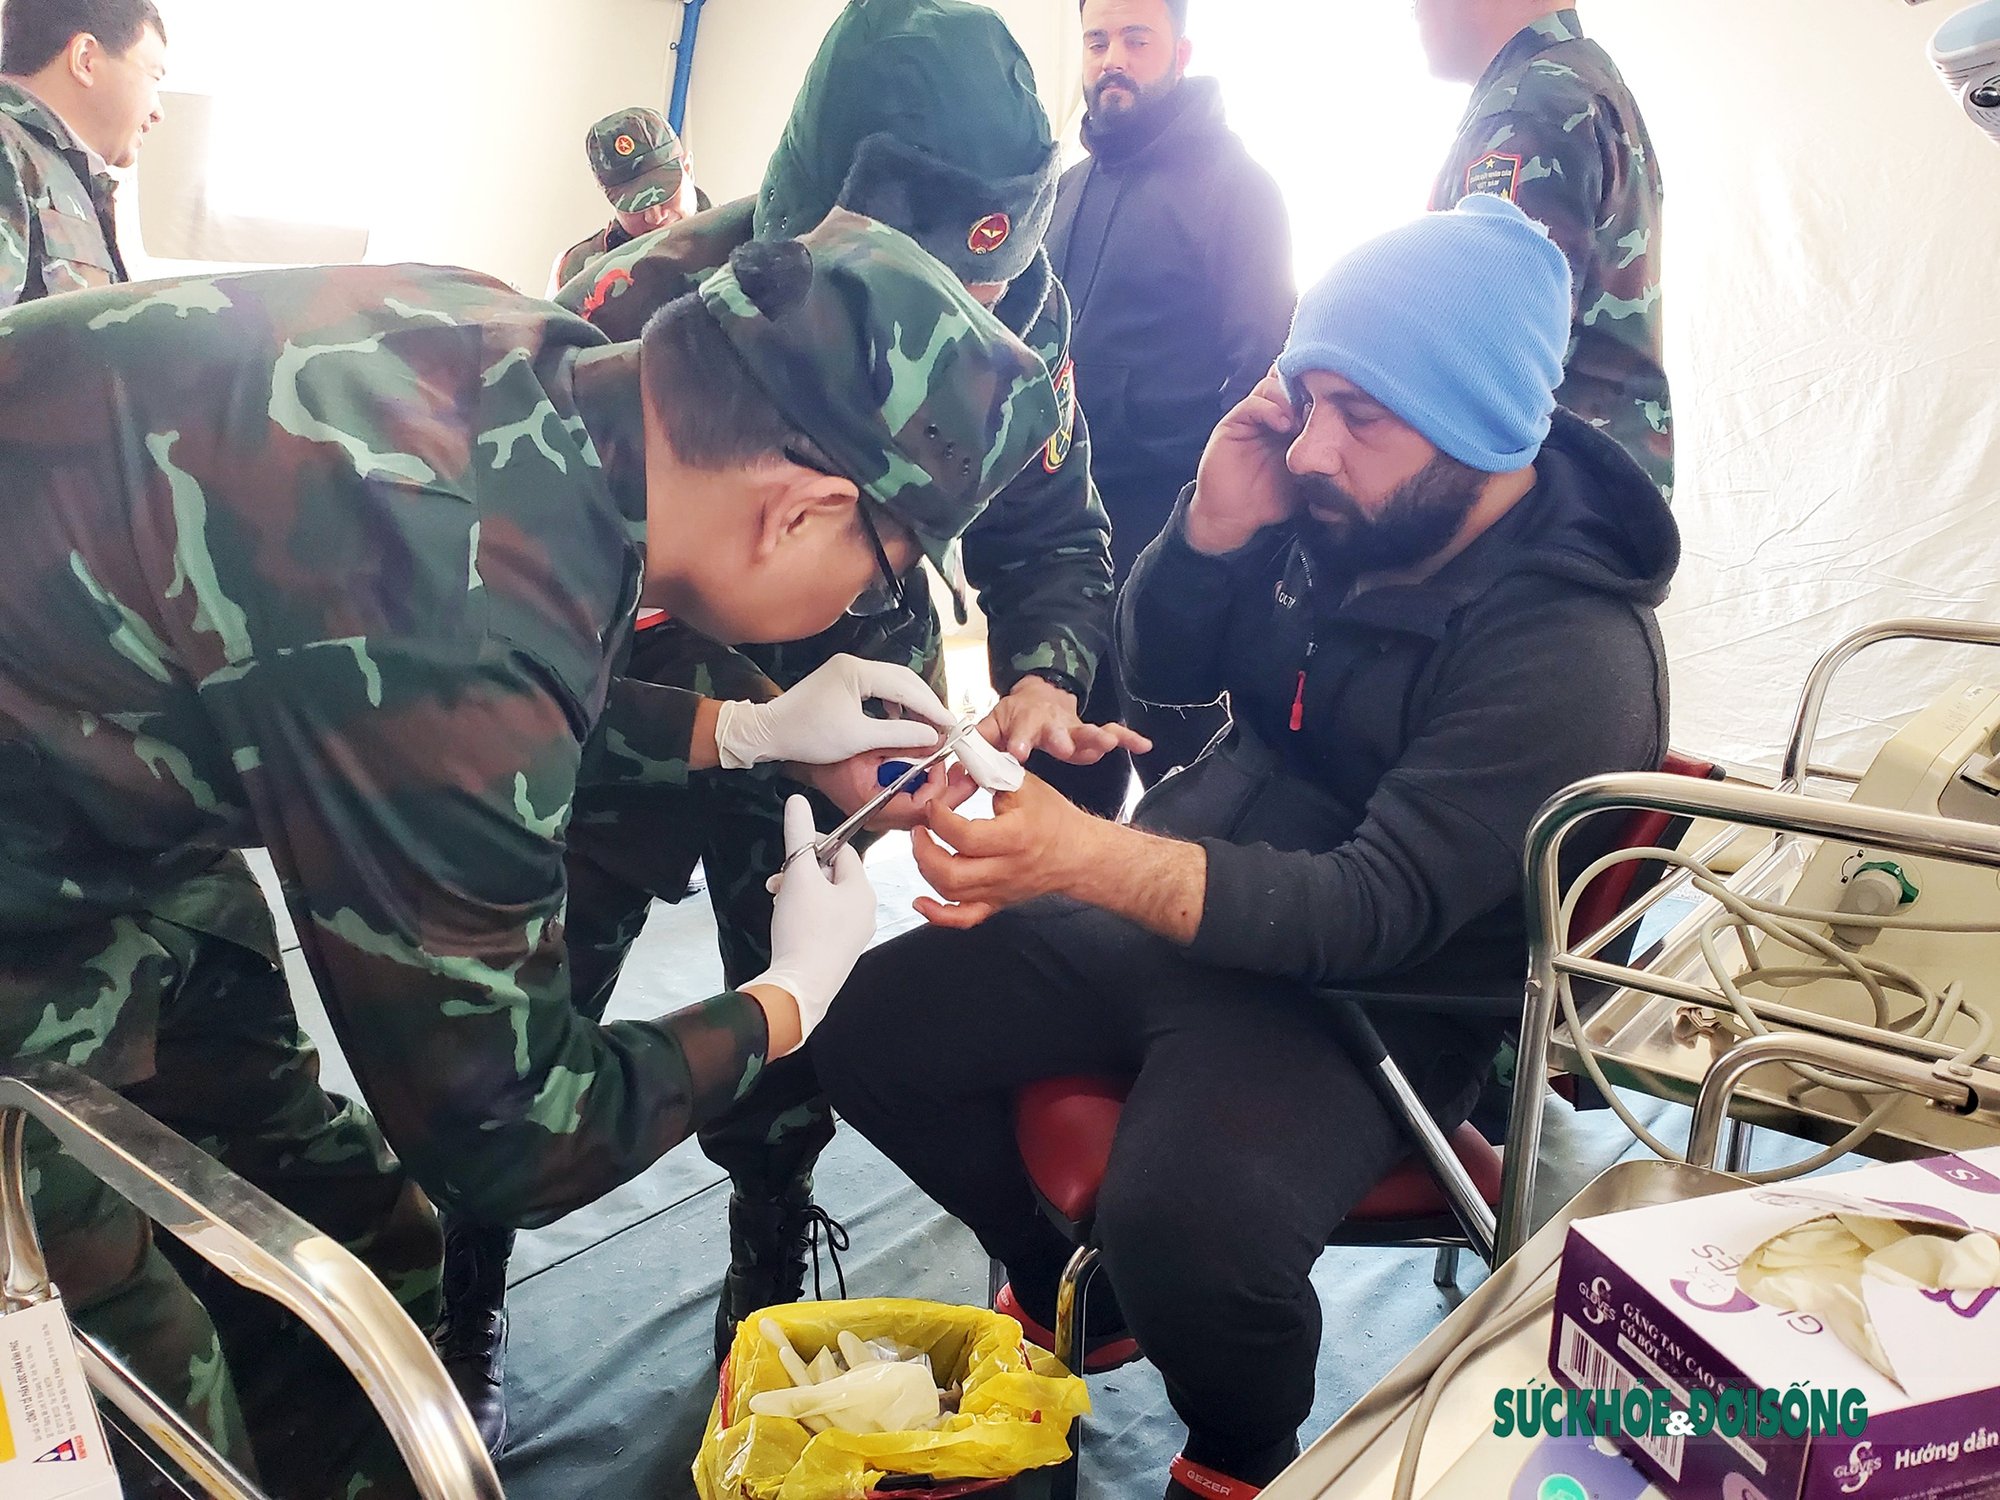  Ngay sau khi sơ cứu cho anh Comert, Tổ quân y Việt Nam cũng thay băng cho anh Armet (33 tuổi) người Thổ Nhĩ Kỳ, chấn thương ngón tay trái do xà beng đập vào trong khi làm nhiệm vụ cứu nạn.